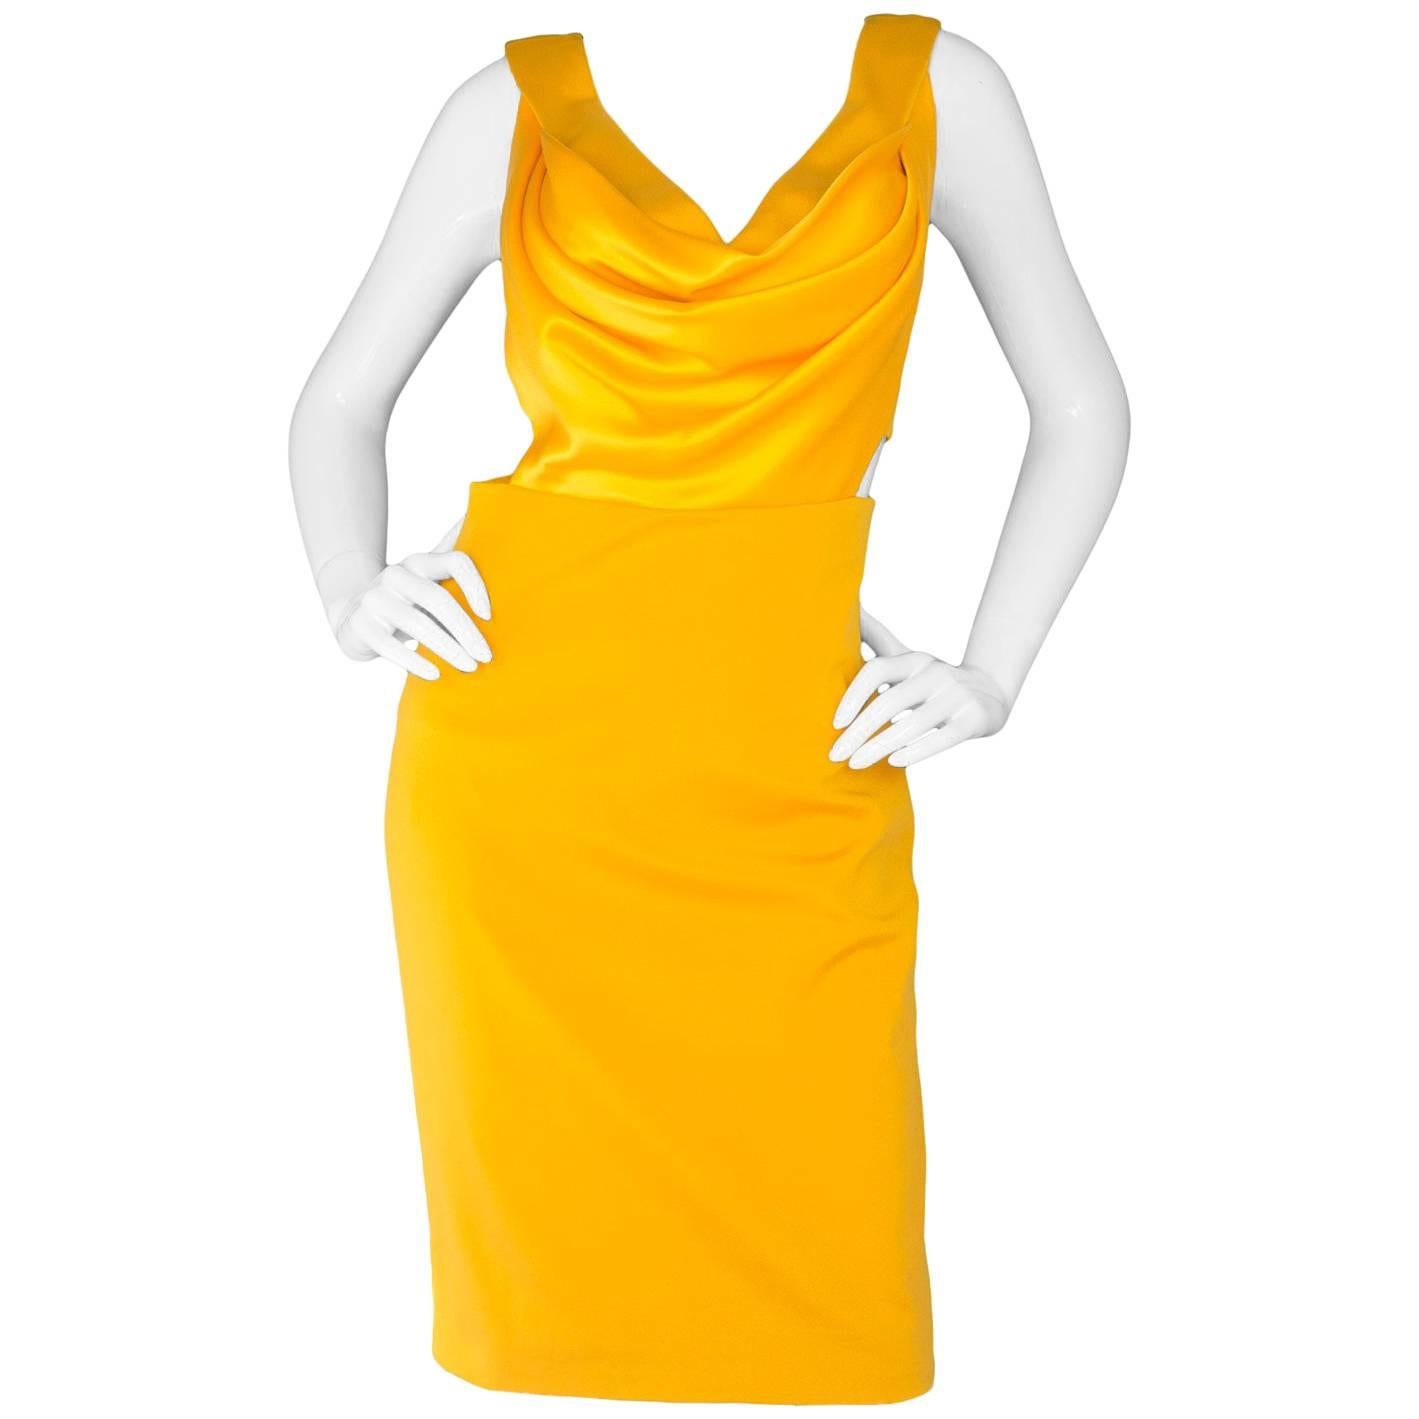 Cushnie ed Ochs Yellow Cut-Out Dress Sz 6